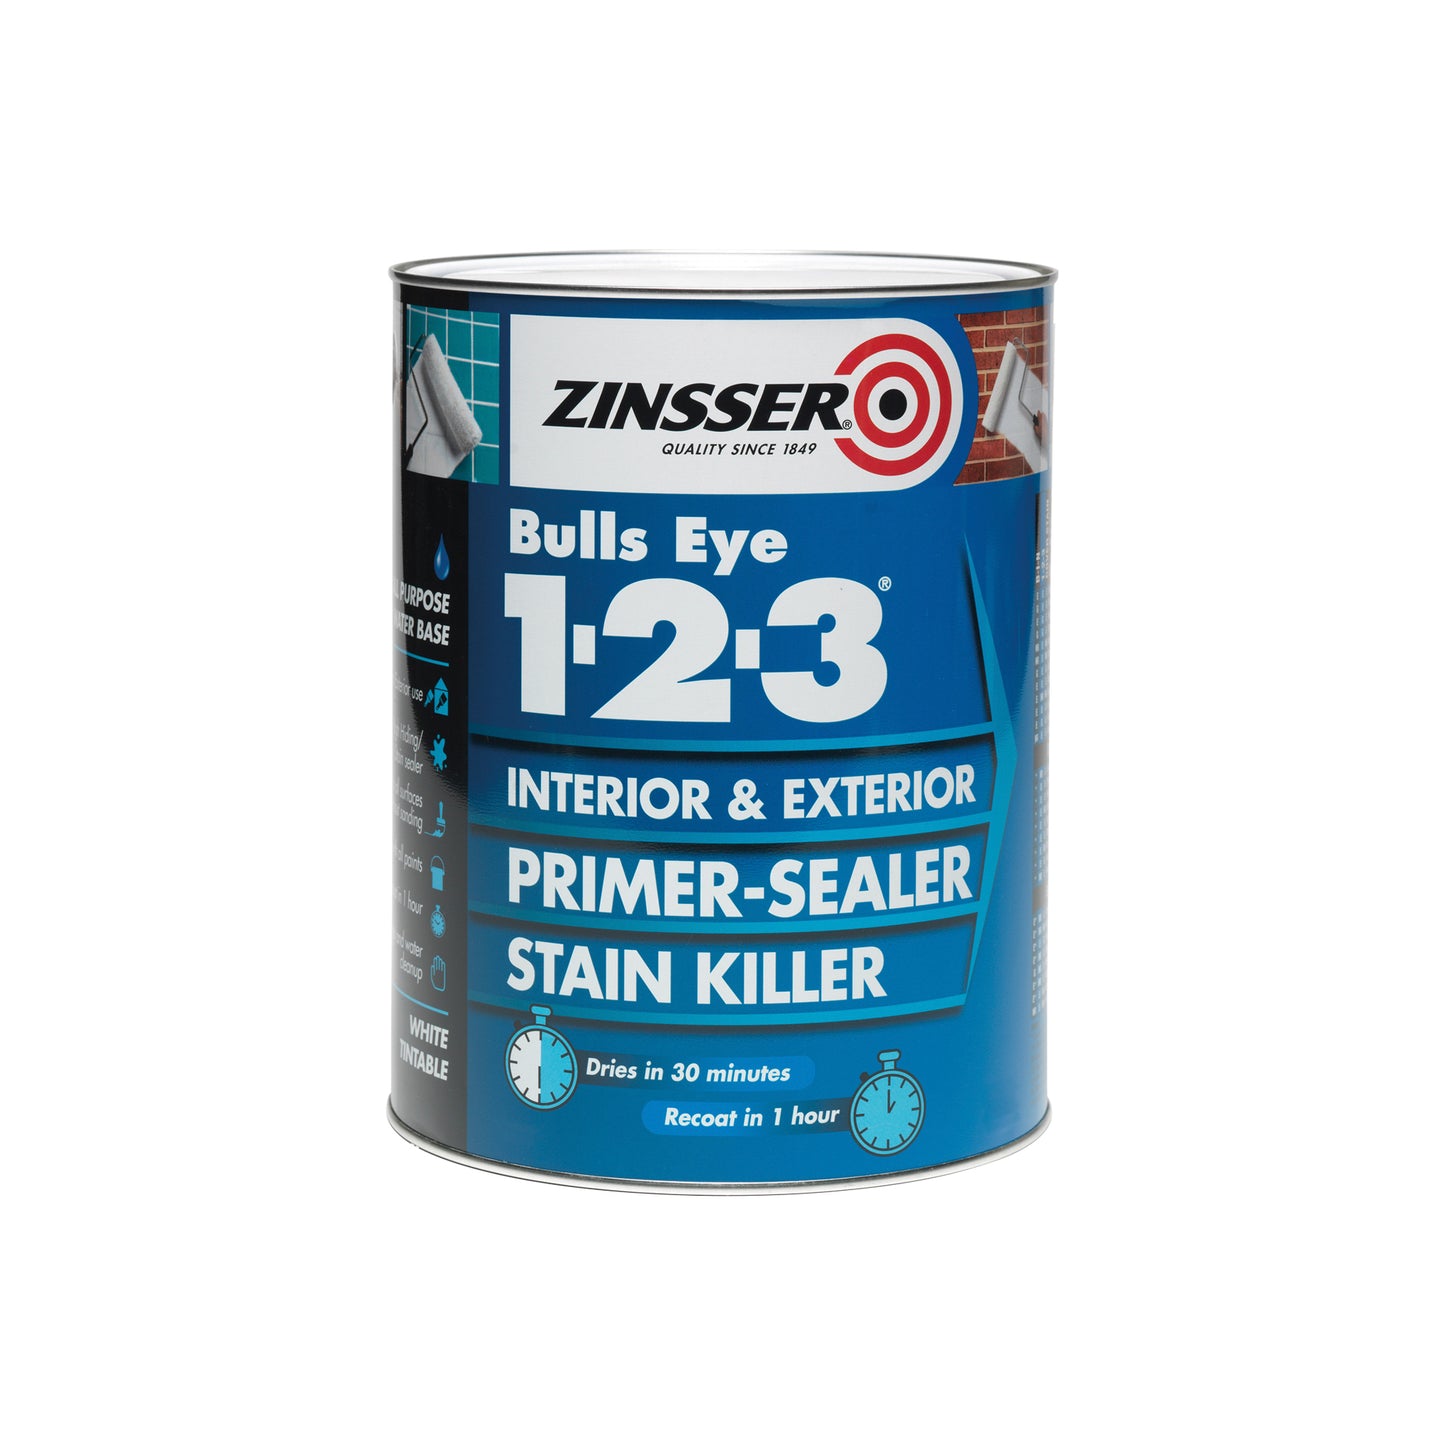 Zinsser Bulls Eye 1-2-3 Primer-Sealer Stain Killer